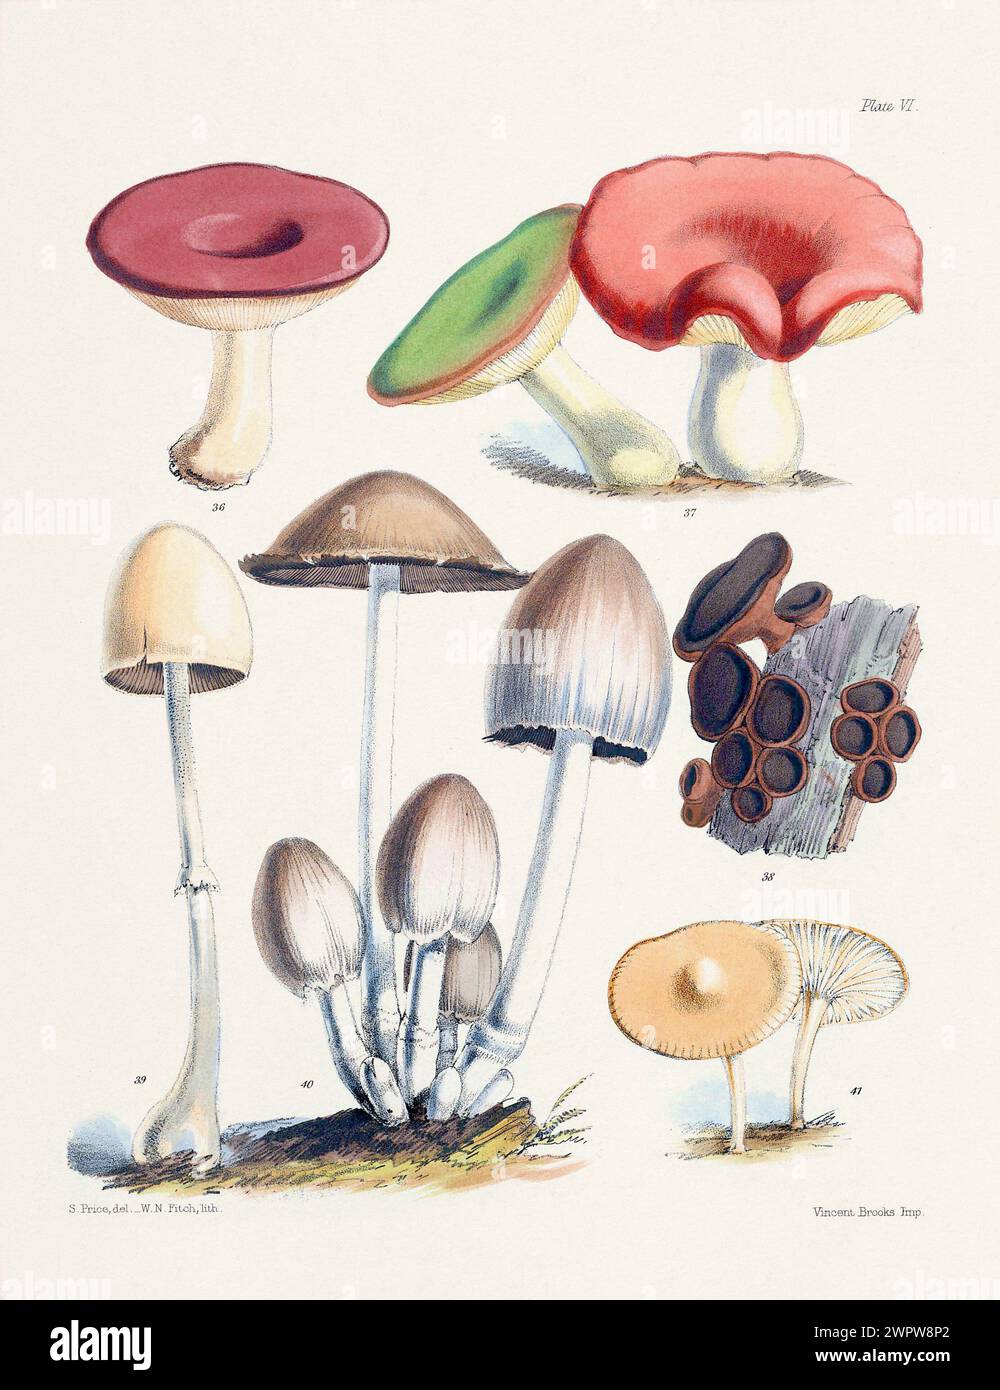 Vintage Mushroom Illustration: Botanical Fungi Art. 36. RUSSULA ALUTACEA. 37. RUSSULA HETEROPHYLLA. 38. BULGARIA INQUIN ANS. 39. AGARICUS SEPARATUS. 4 Stock Photo